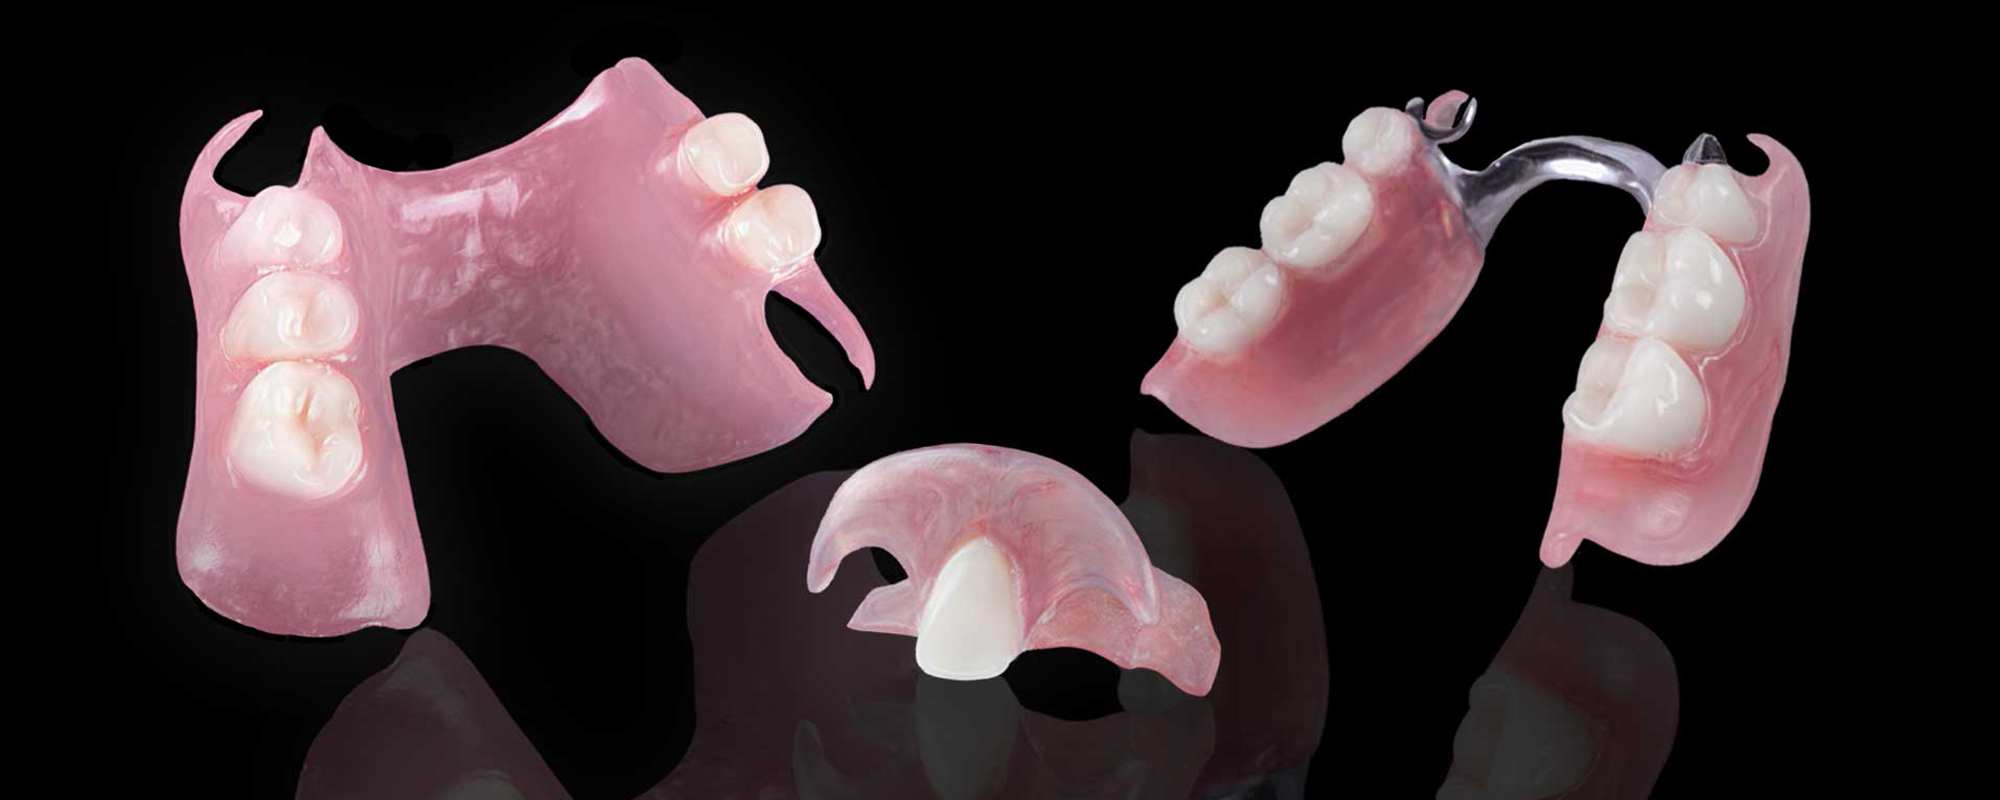 разновидности съемных зубных протезов